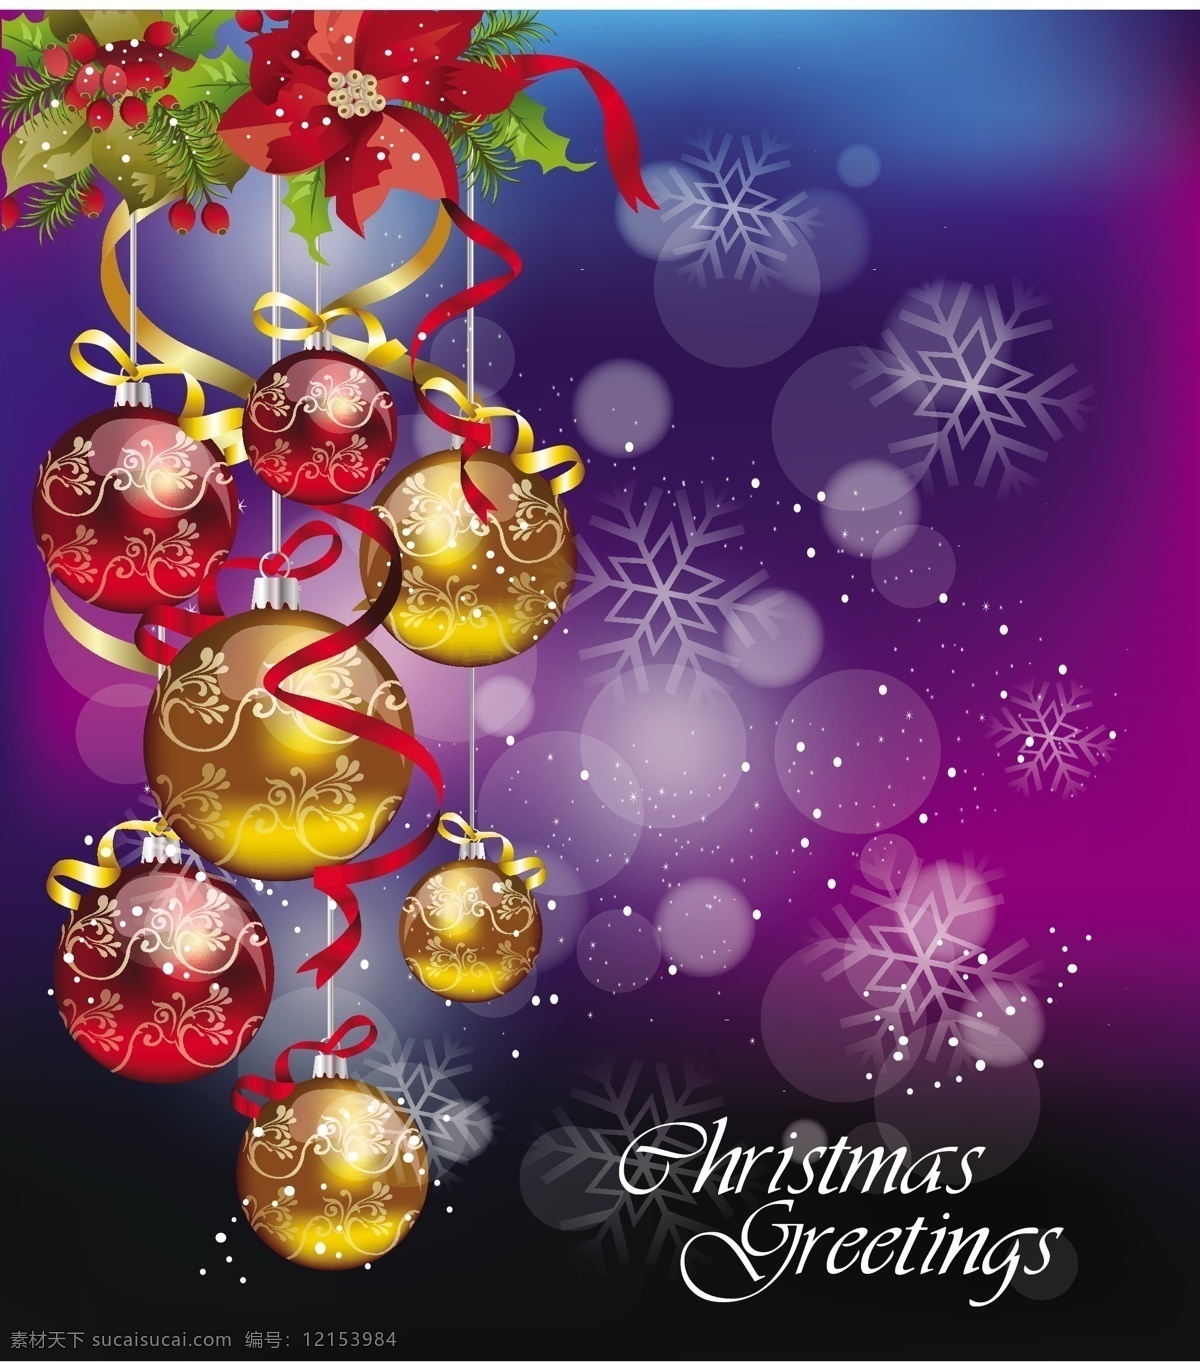 彩色 圣诞 挂 球 矢量 黄金 节日 圣诞节 雪 装饰 紫色 挂球 冬青树的果实 矢量图 其他节日